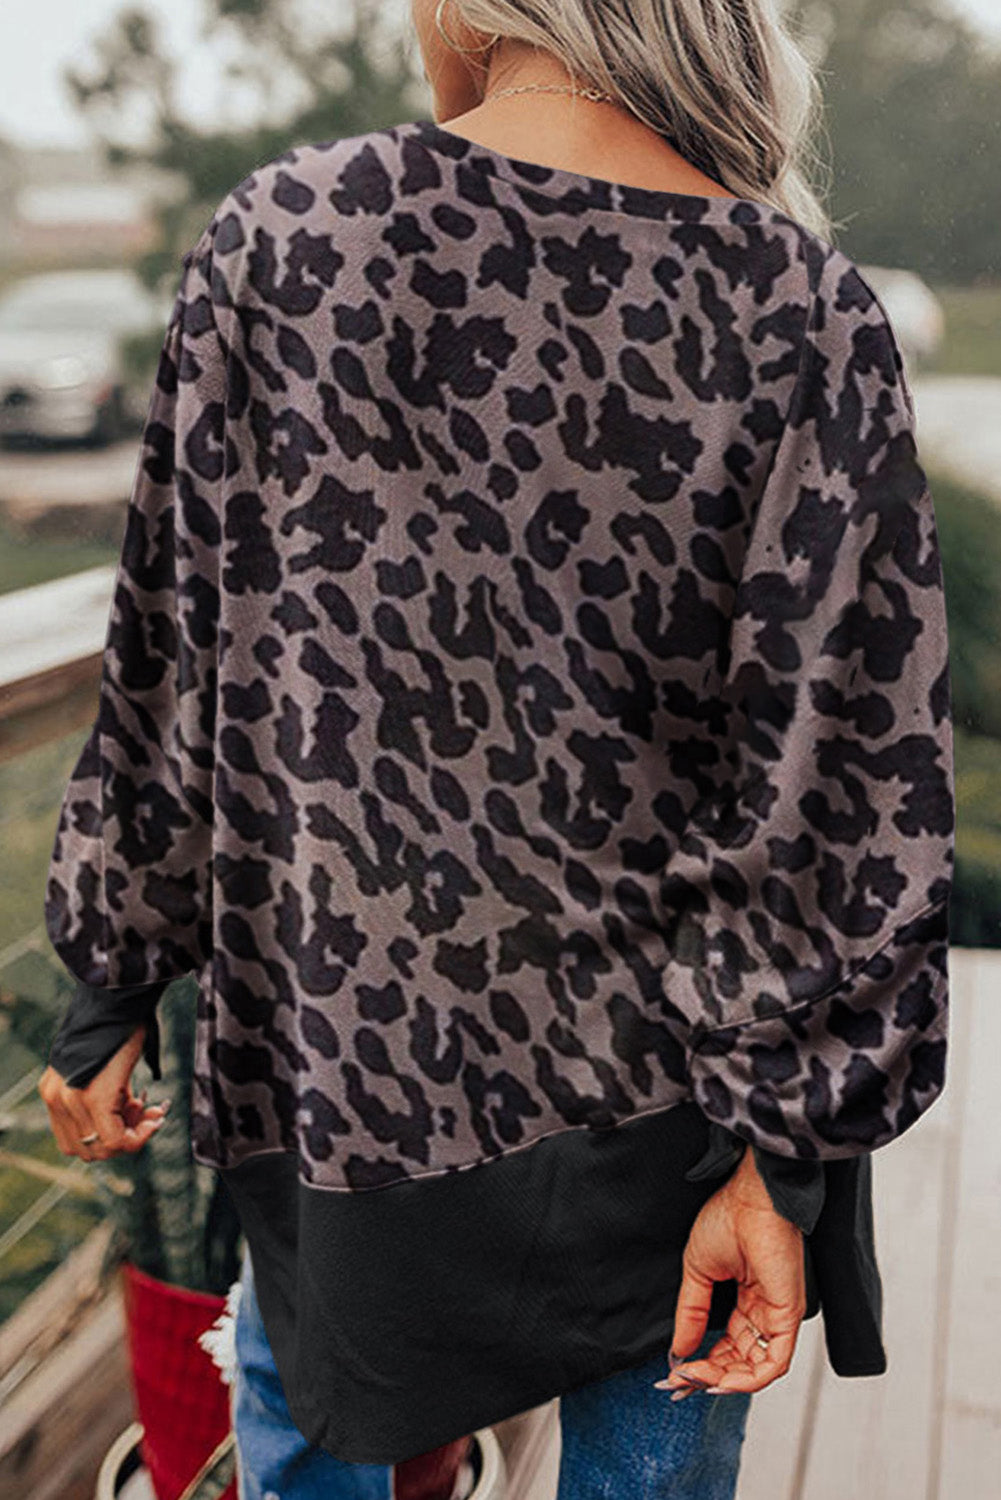 Pulover s črnim leopardjim škofovskim rokavom in razporkom